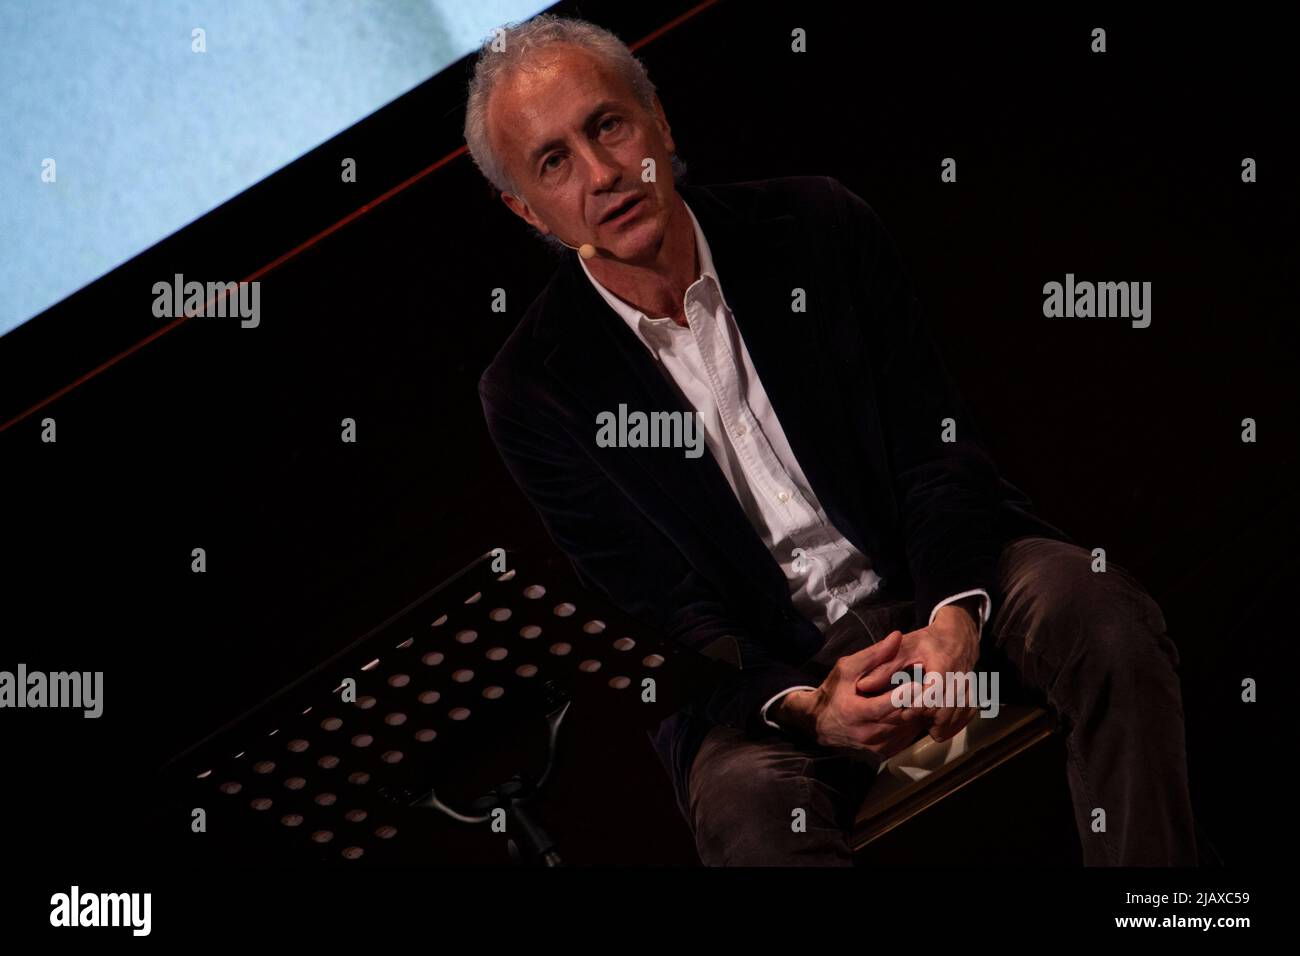 Il direttore del fato Quotidiano, Marco Travaglio, al festival del giornalismo a Perugia Foto de stock